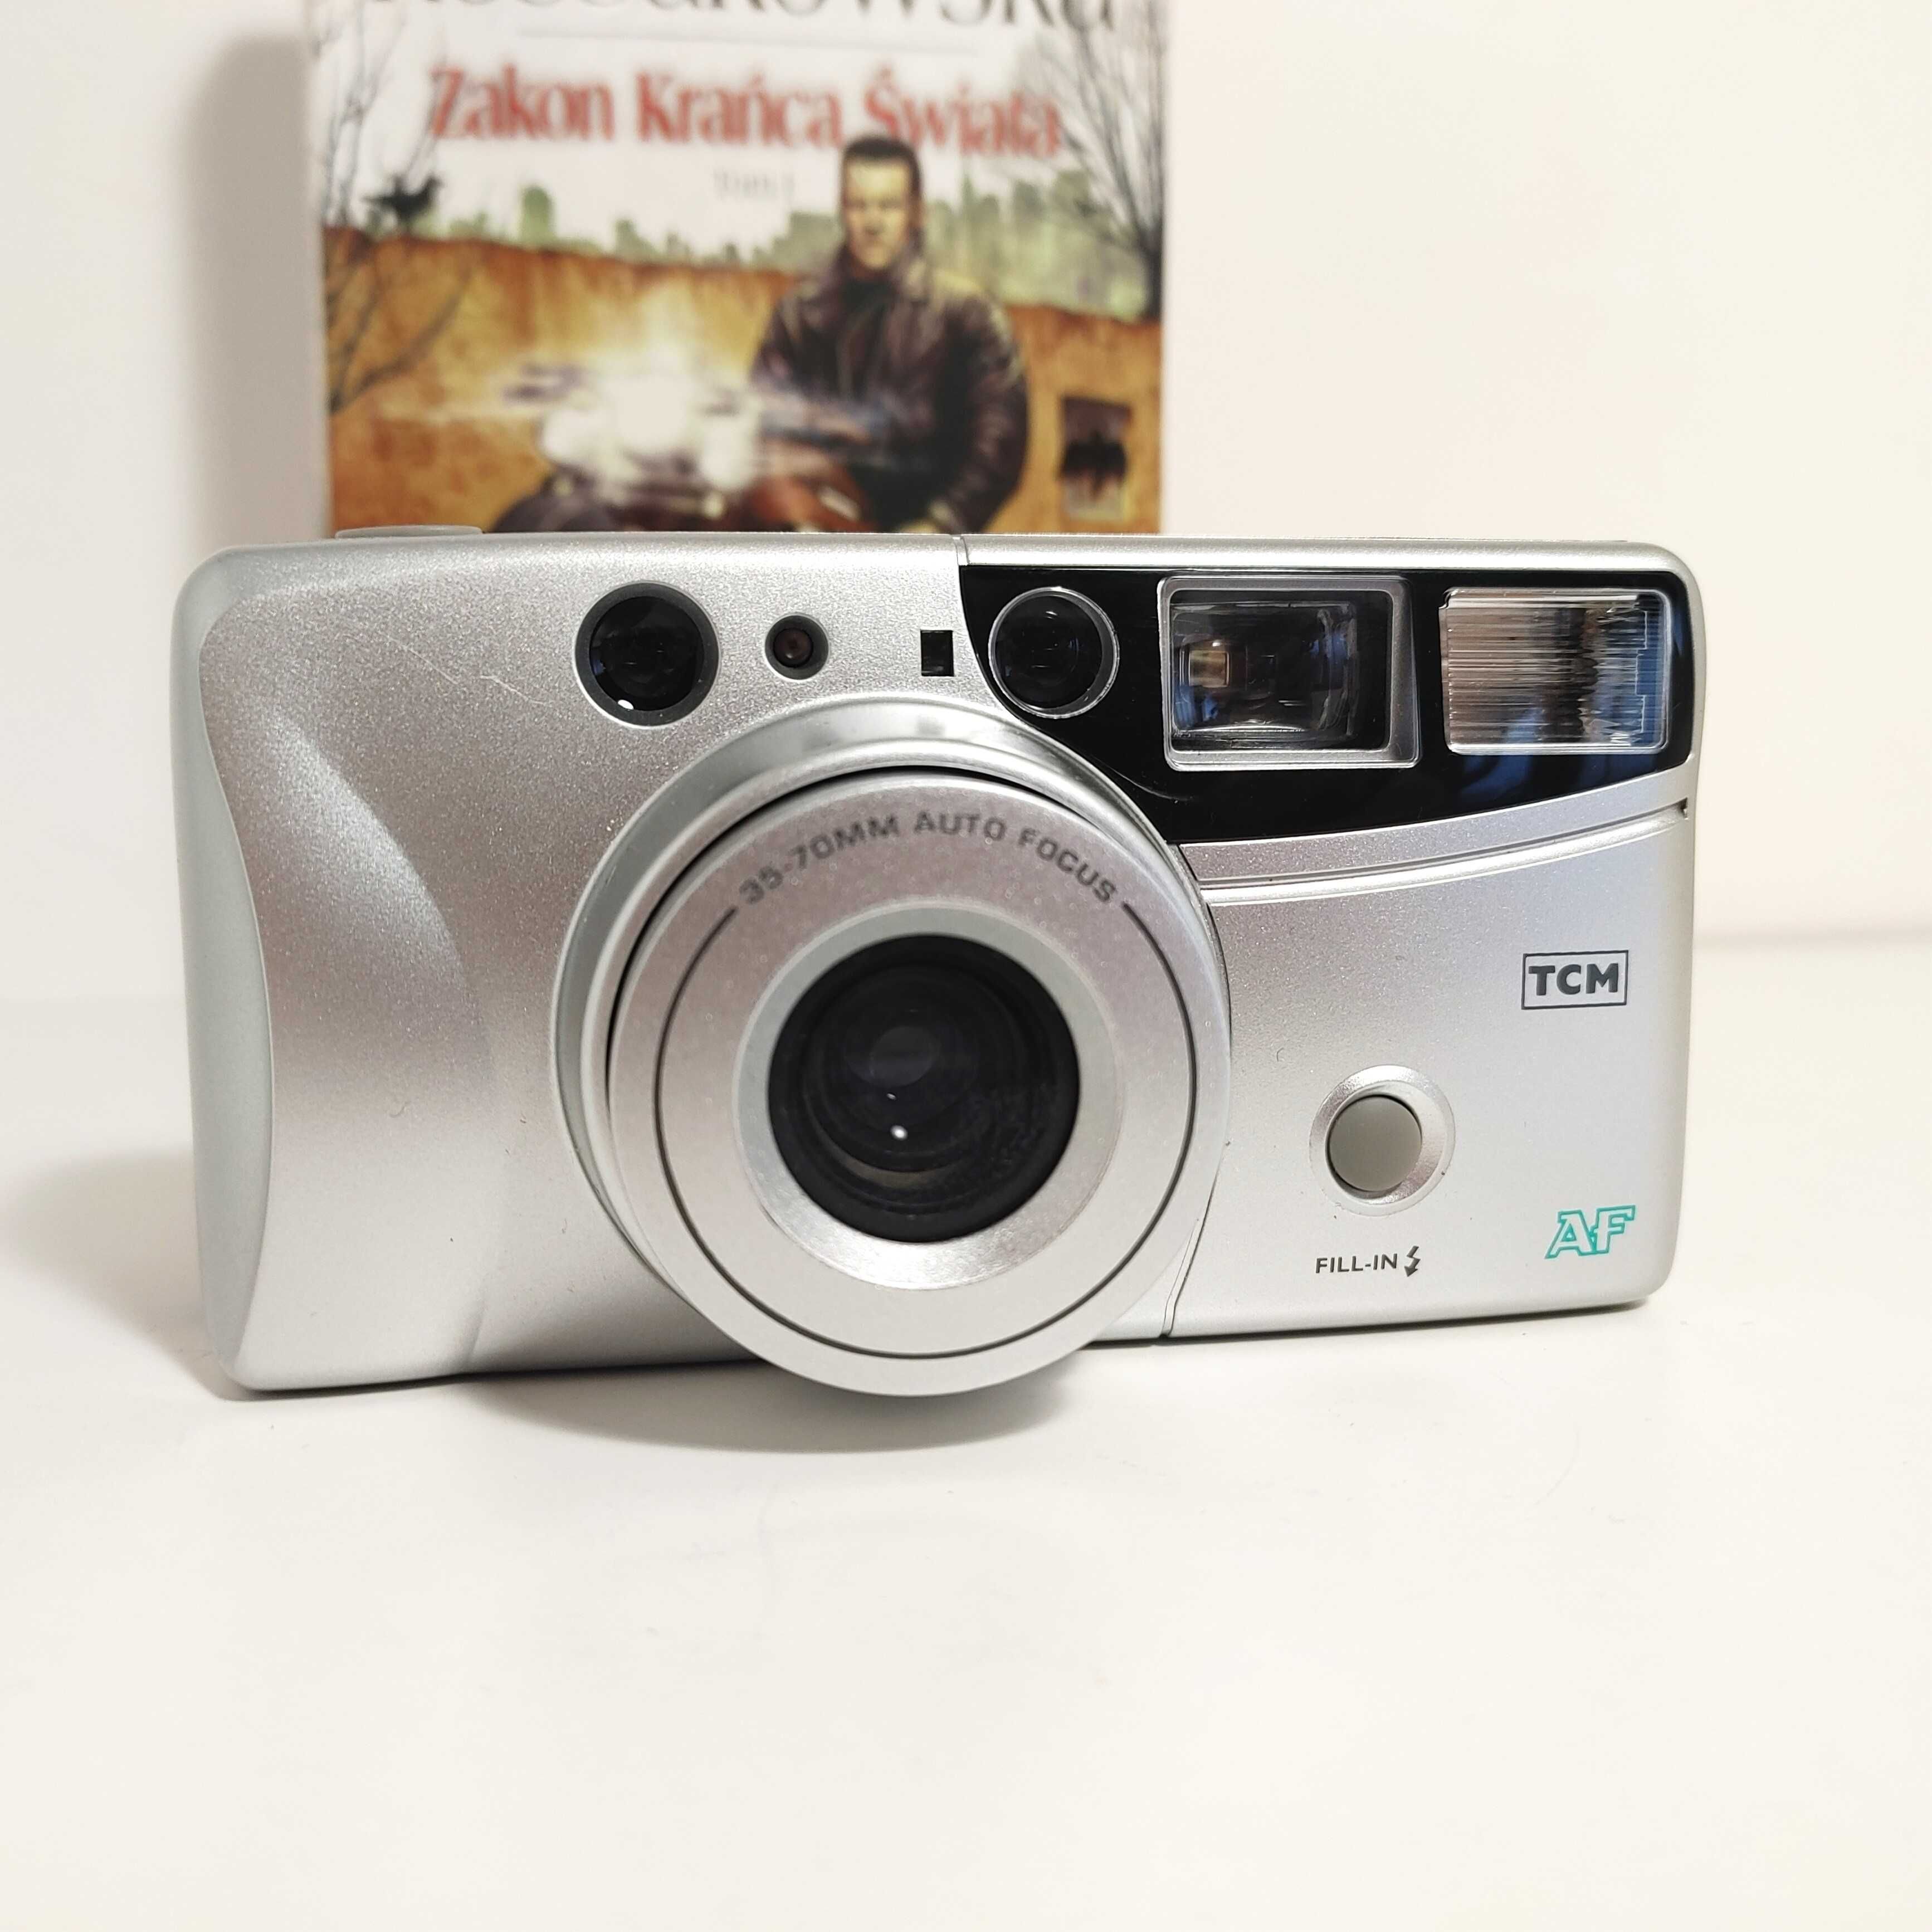 Kompaktowy analogowy aparat  fotograficzny Autofocus Zoom 35-70 mm TCM